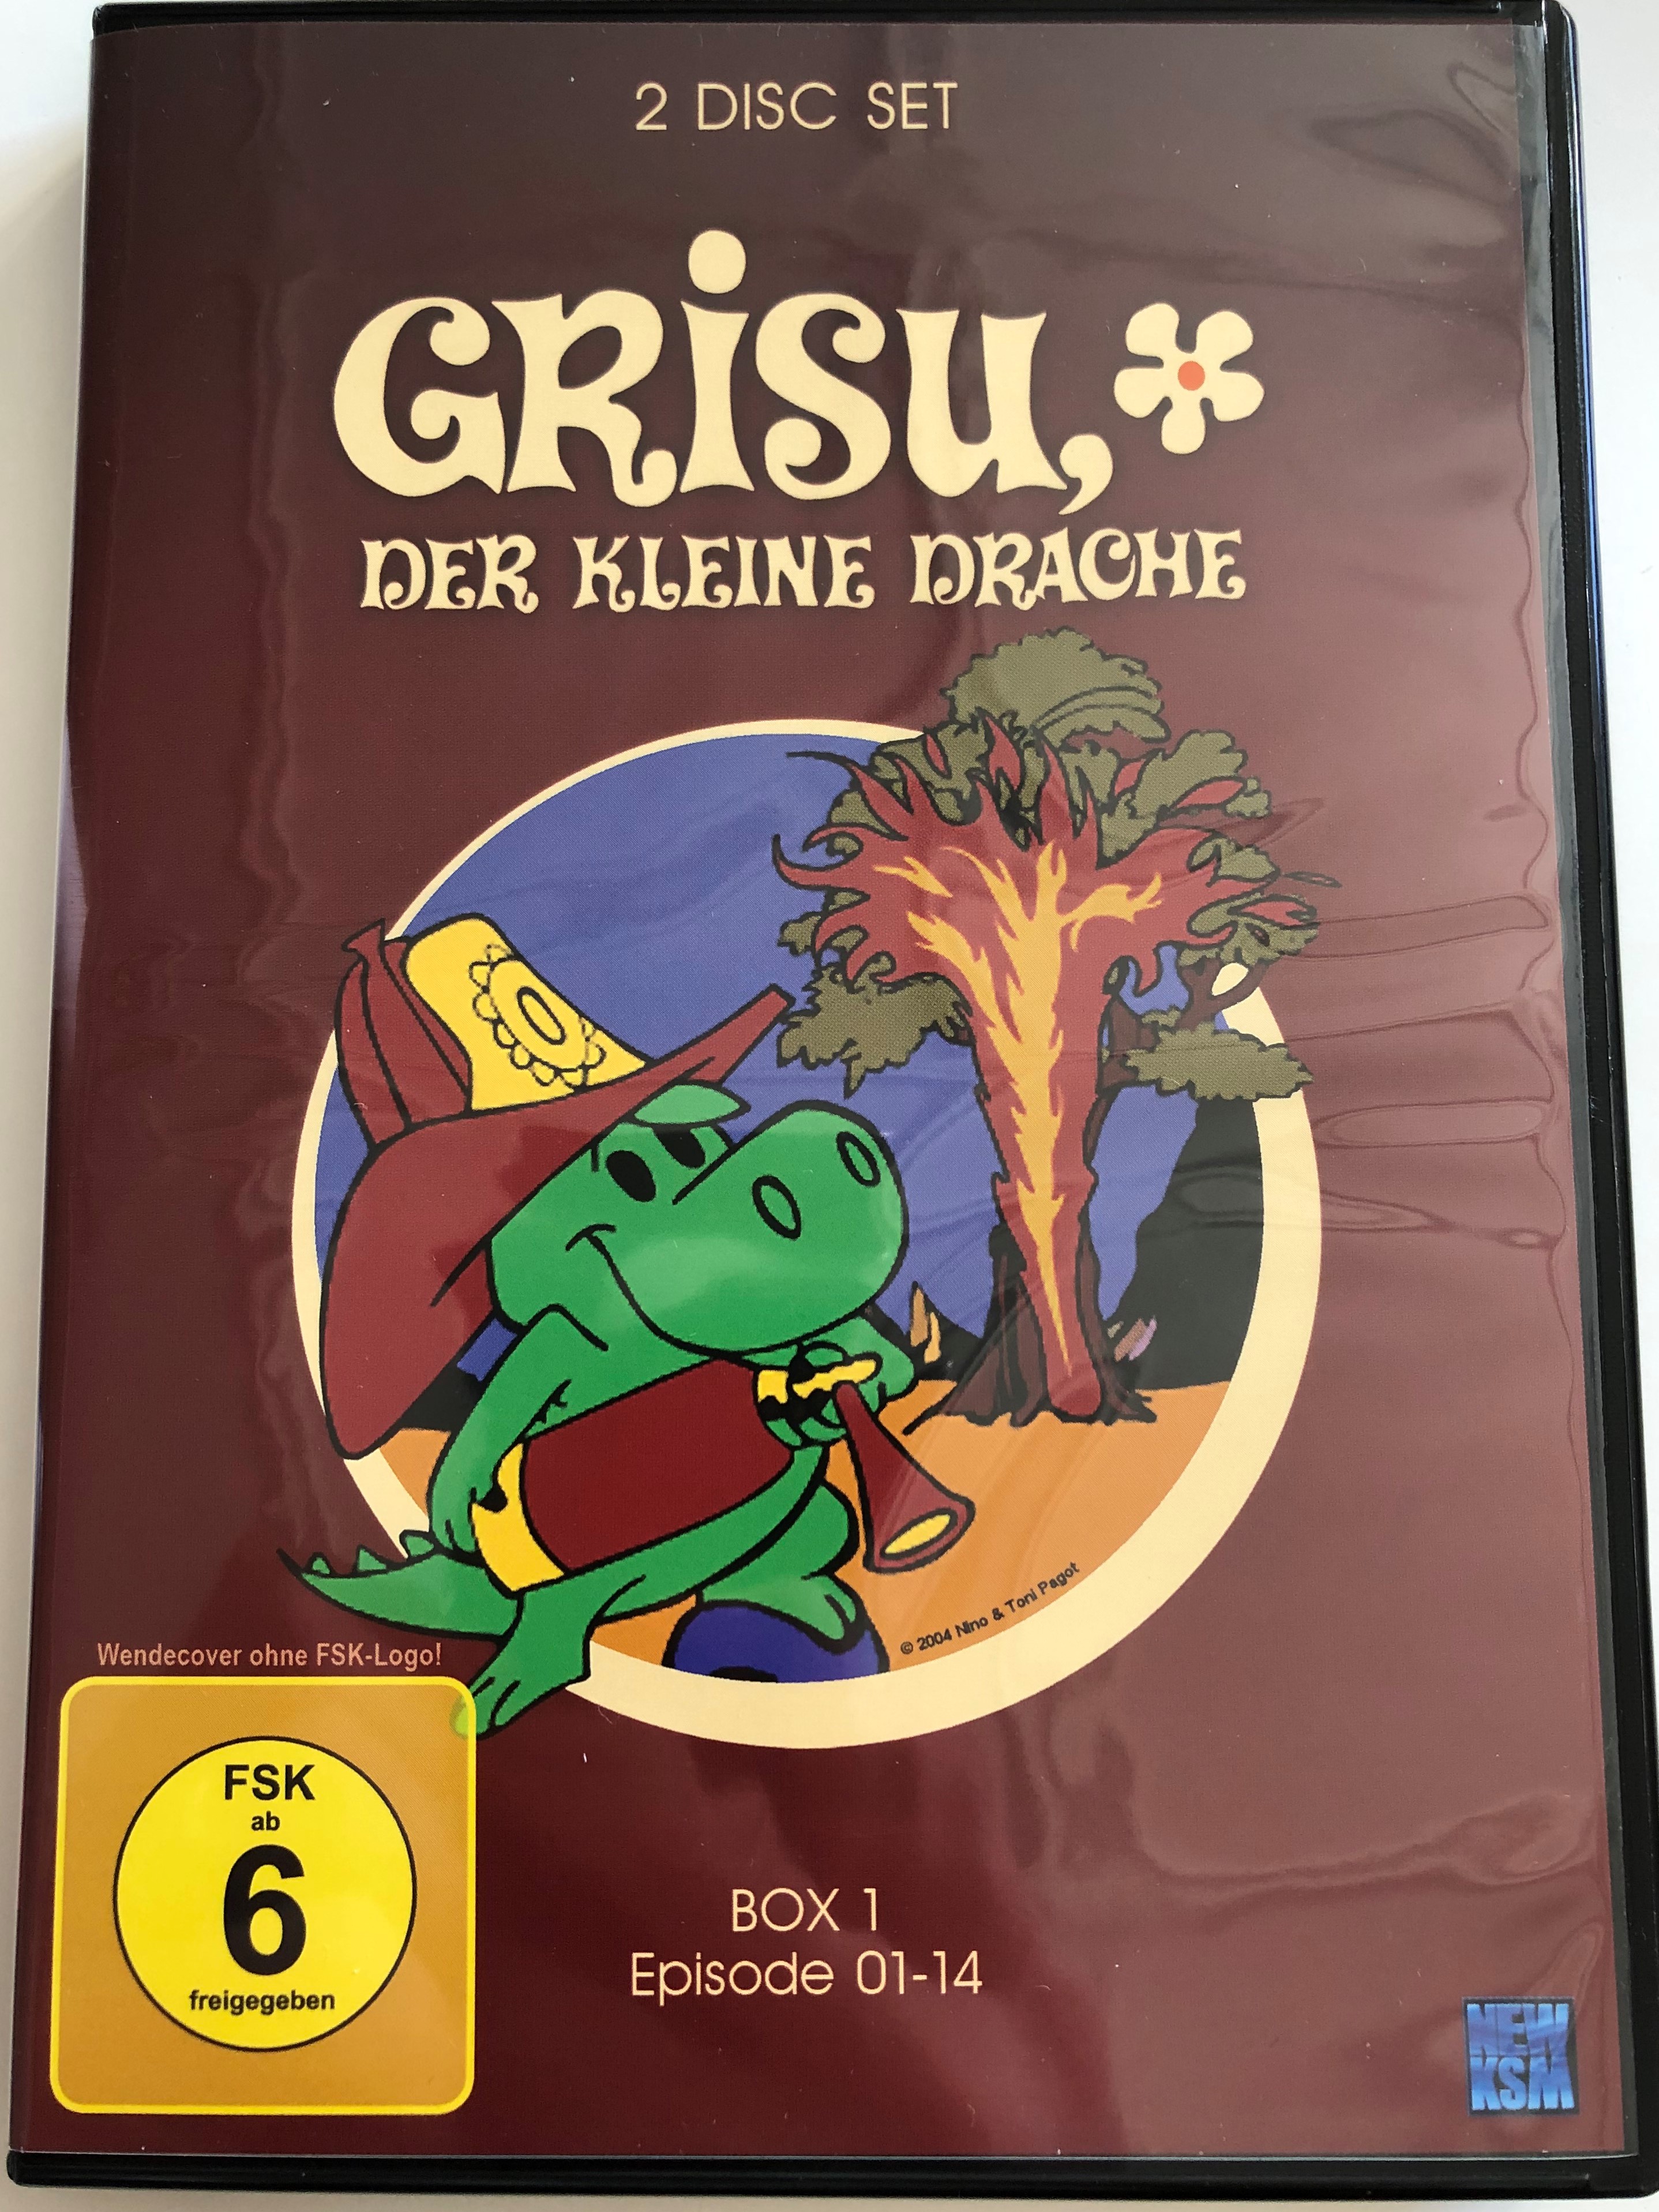 grisu-der-kleine-drache-dvd-2-disc-set-box-1-episode-01-14-draghetto-gris-1-.jpg